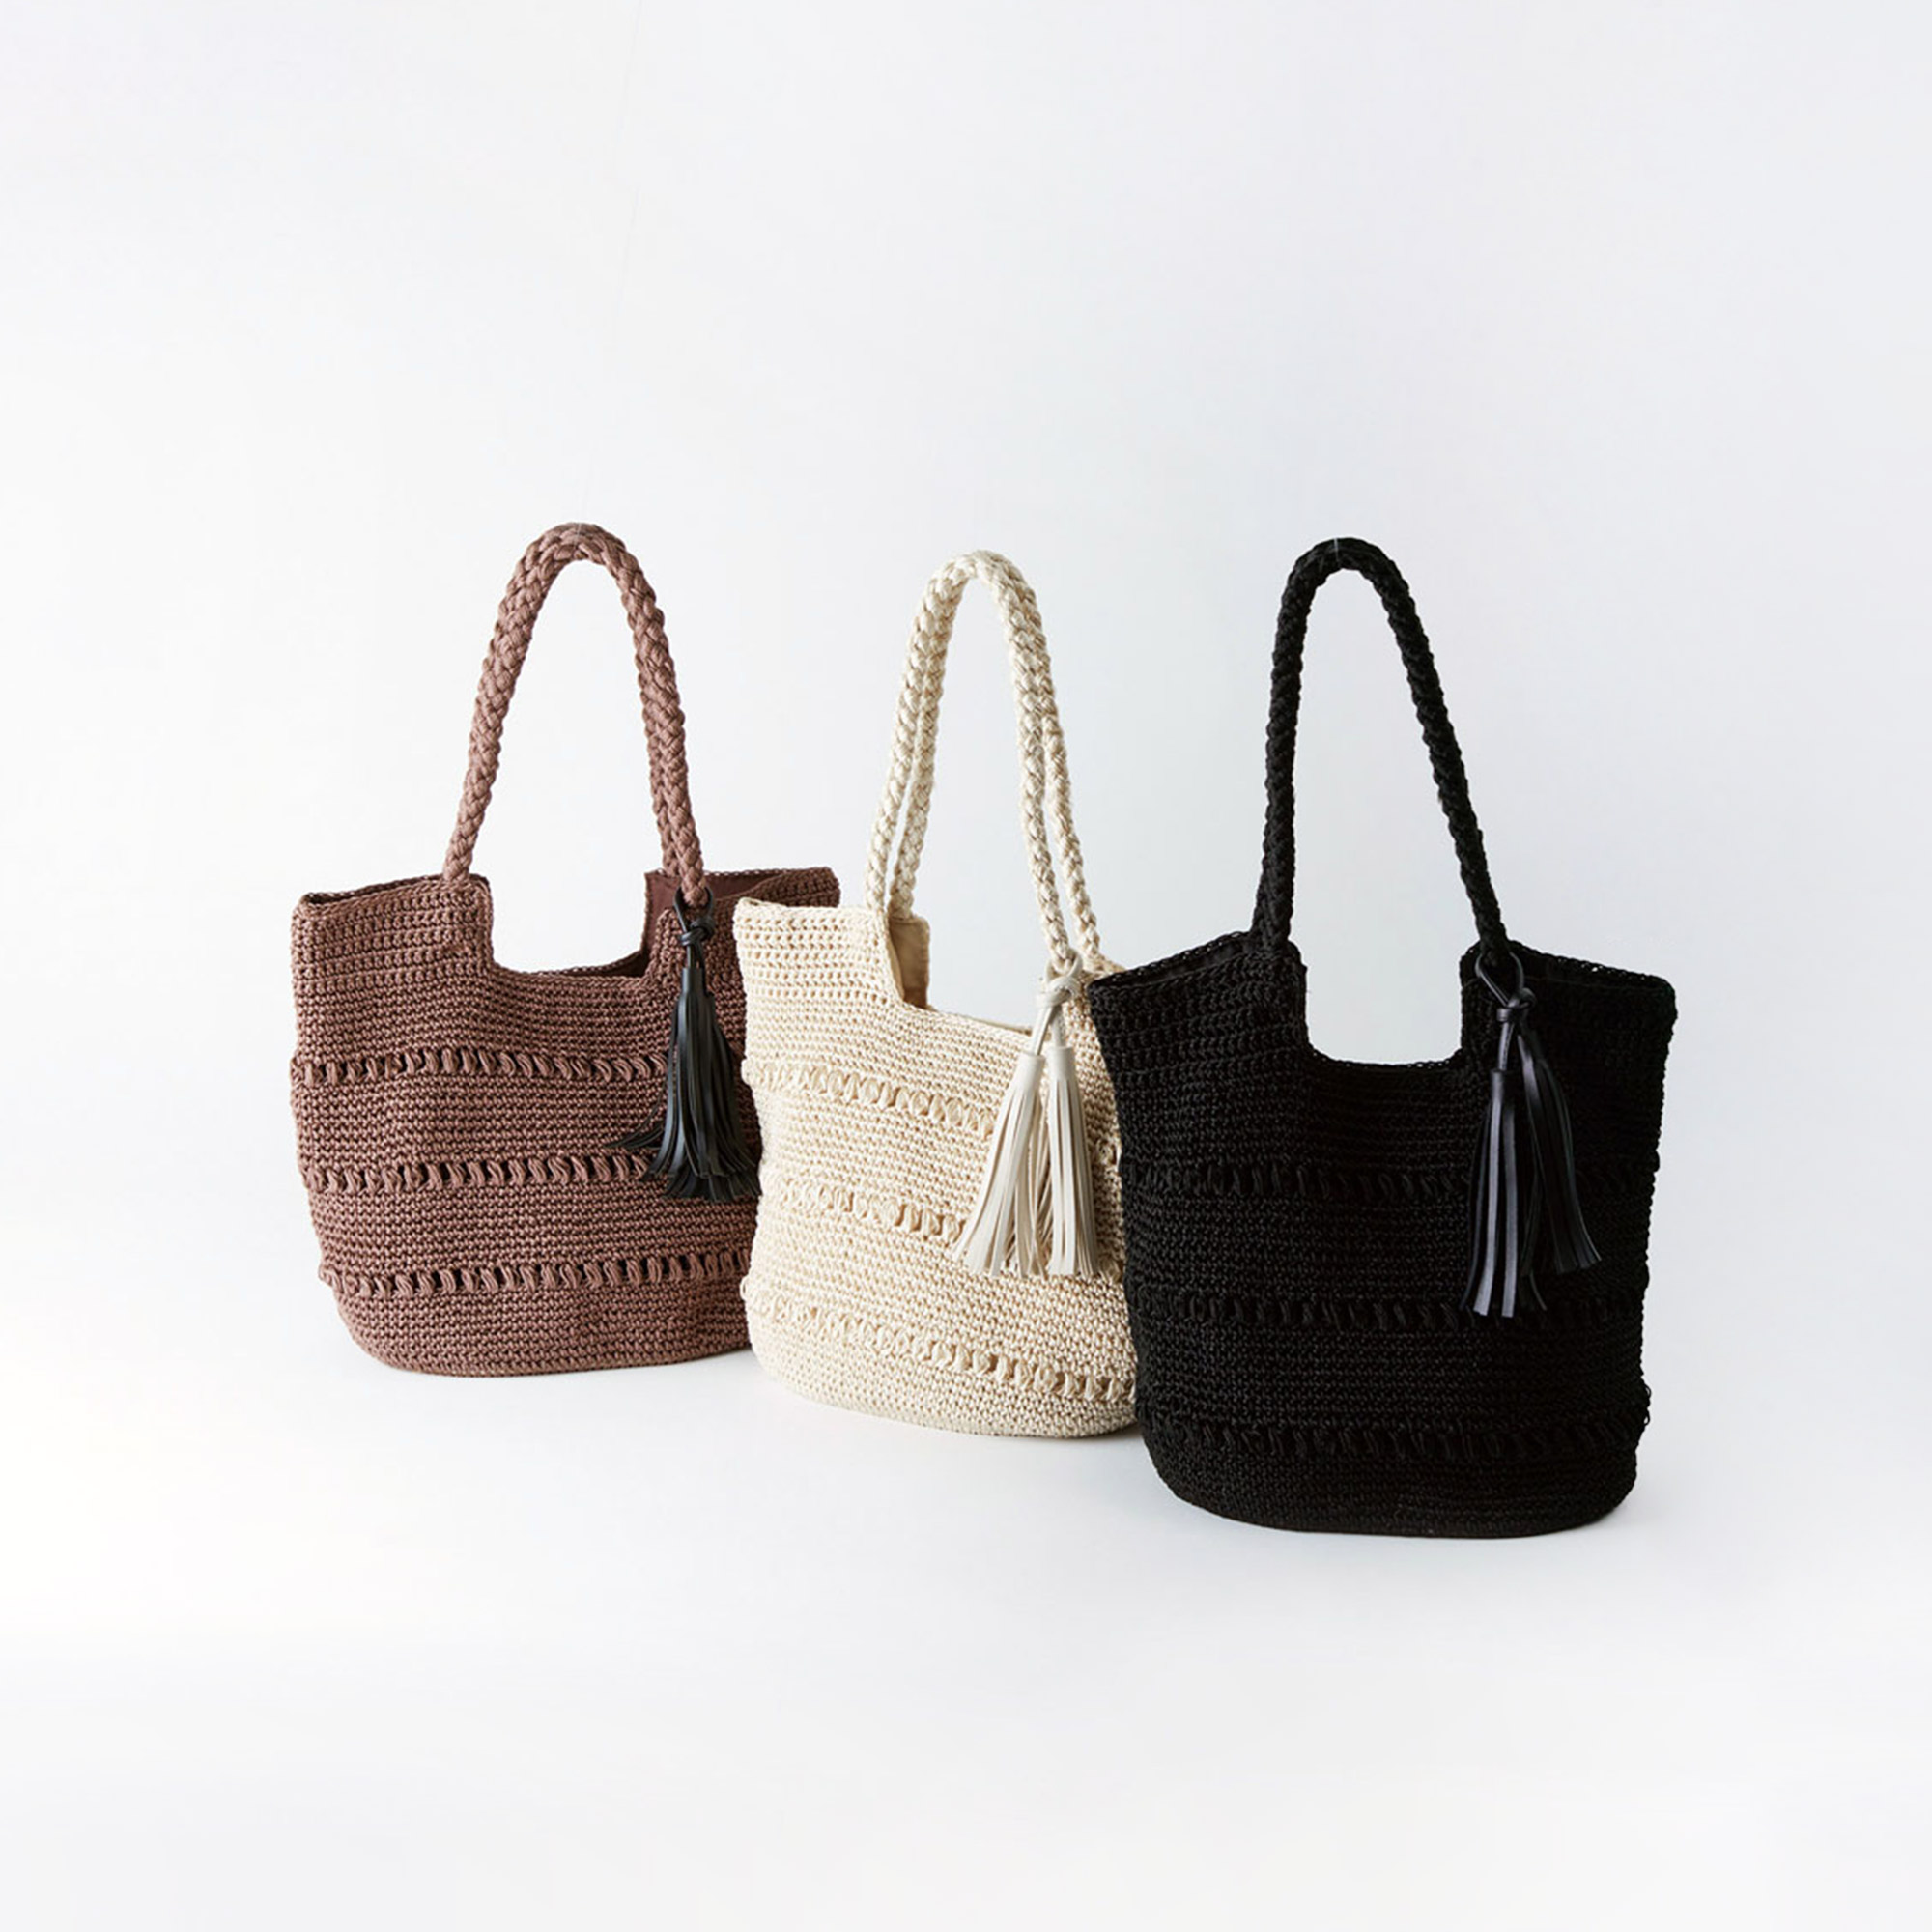 艶のある上品な クロシェトートバッグ（3色） | shesay(志成販売)｜インテリア・ファッション雑貨の卸仕入れ専用サイト